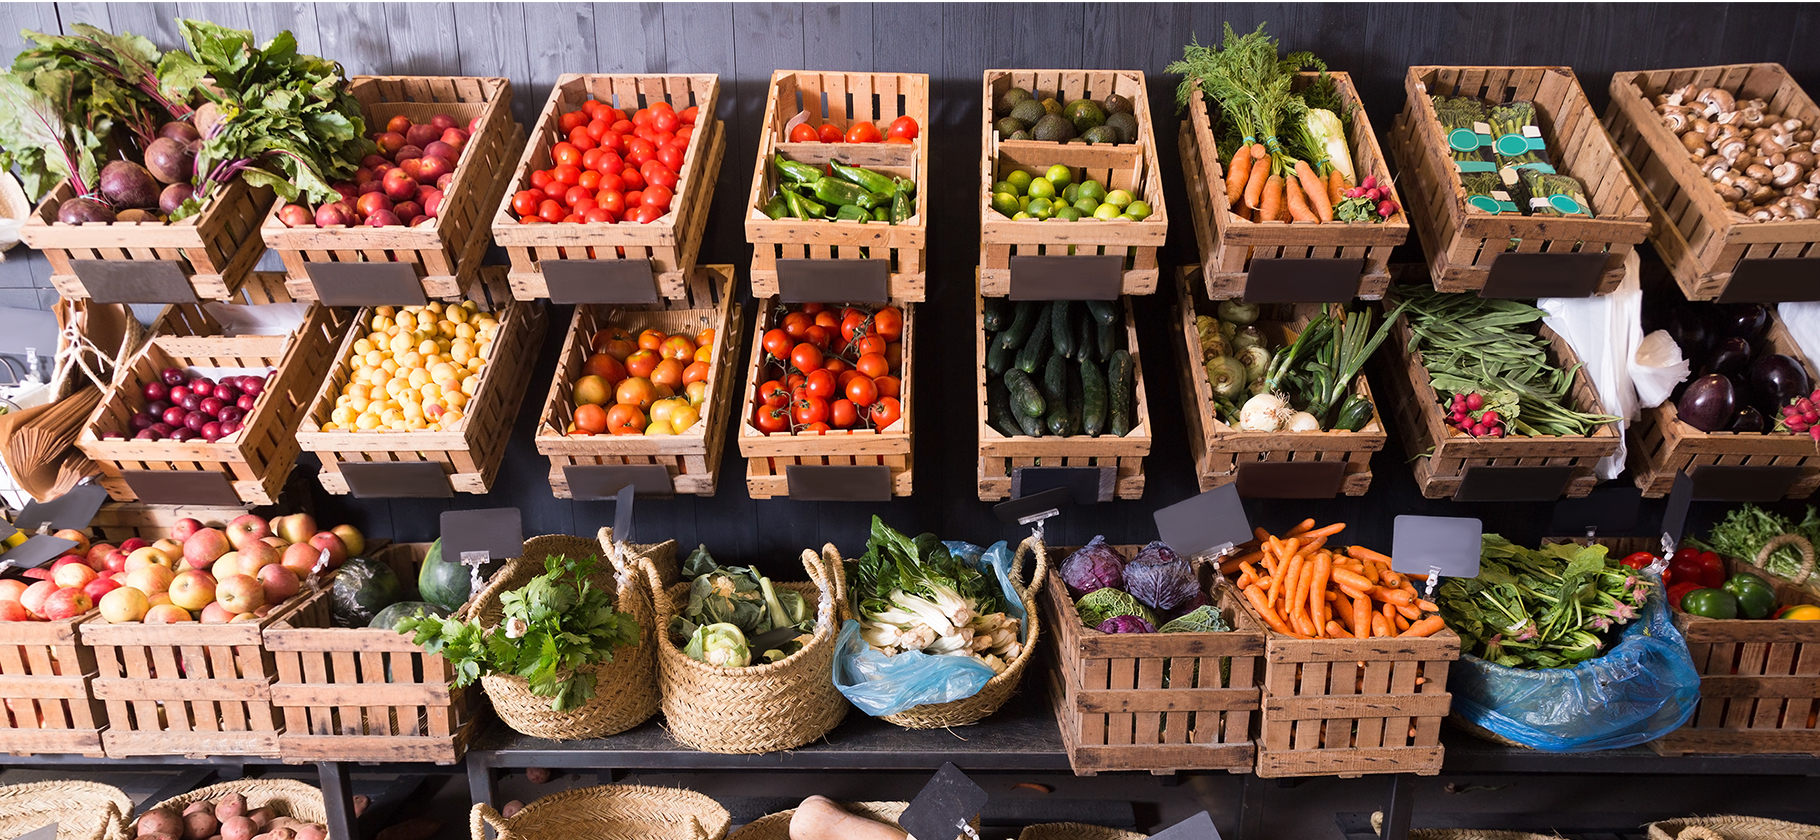 Что покупать на рынках в сентябре: сезонные овощи, фрукты и ягоды